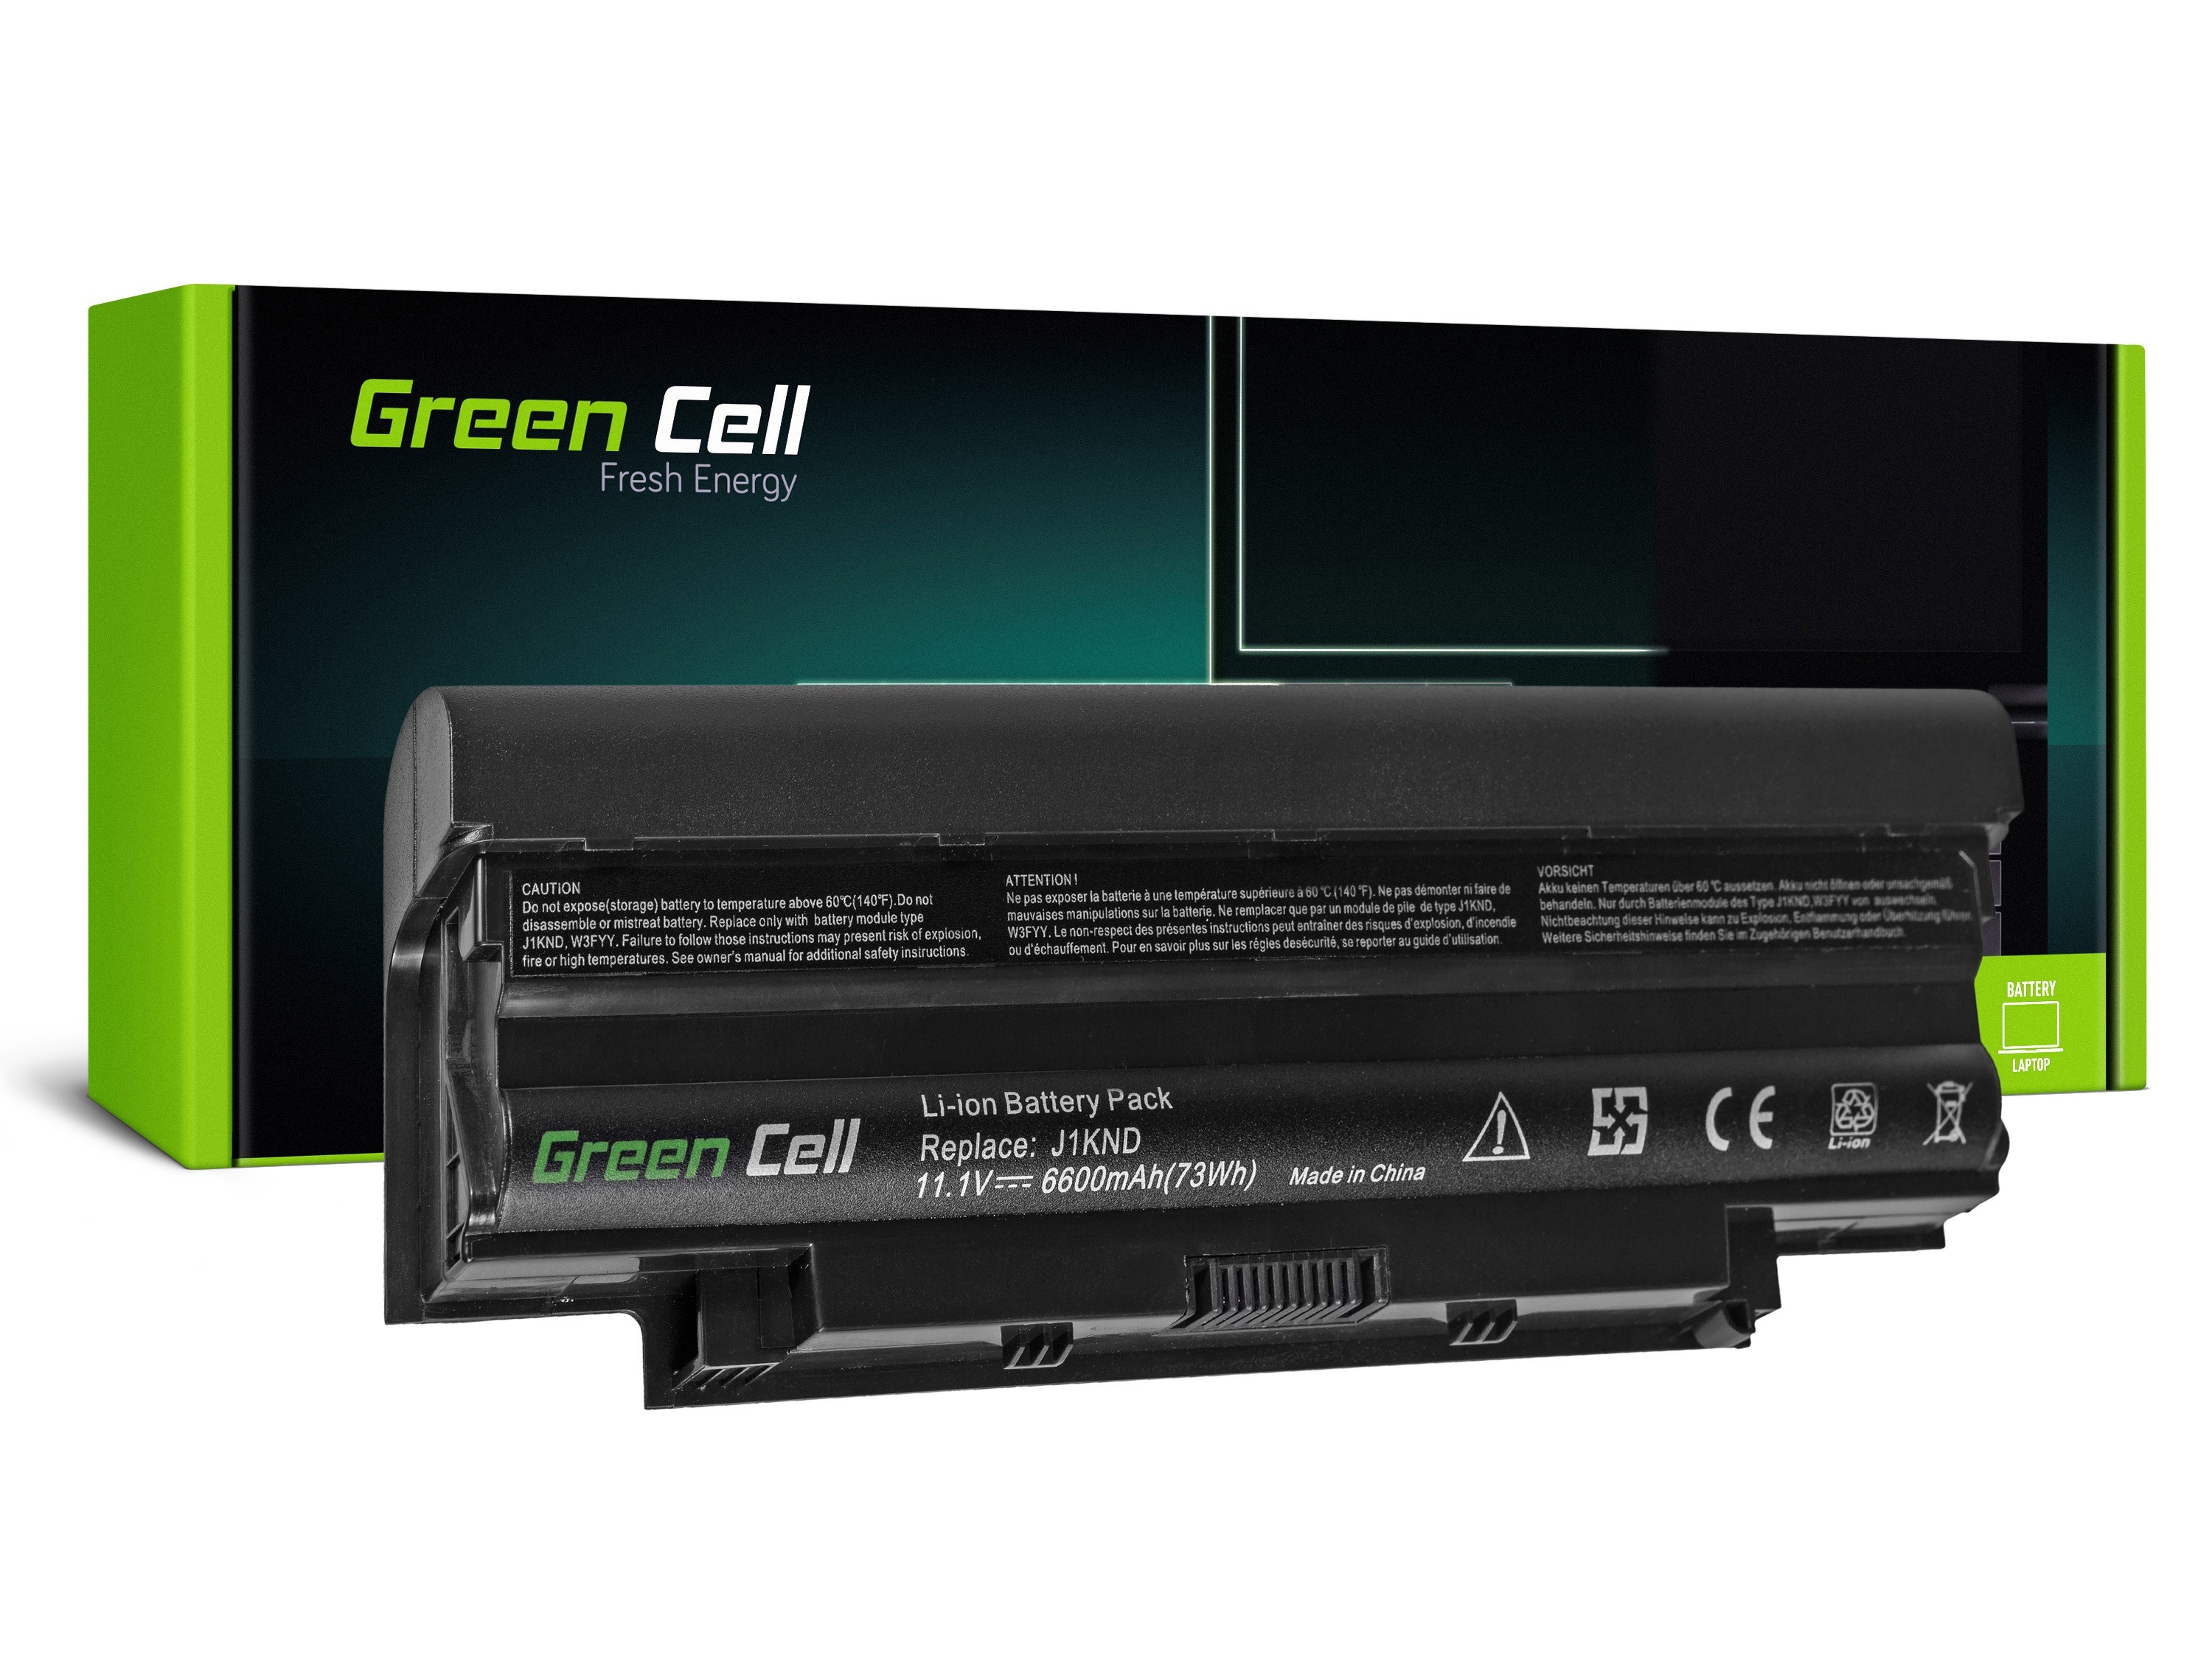 Green Cell kannettavan akku Dell Inspiron N3010 N4010 N5010 13R 14R 15R J1